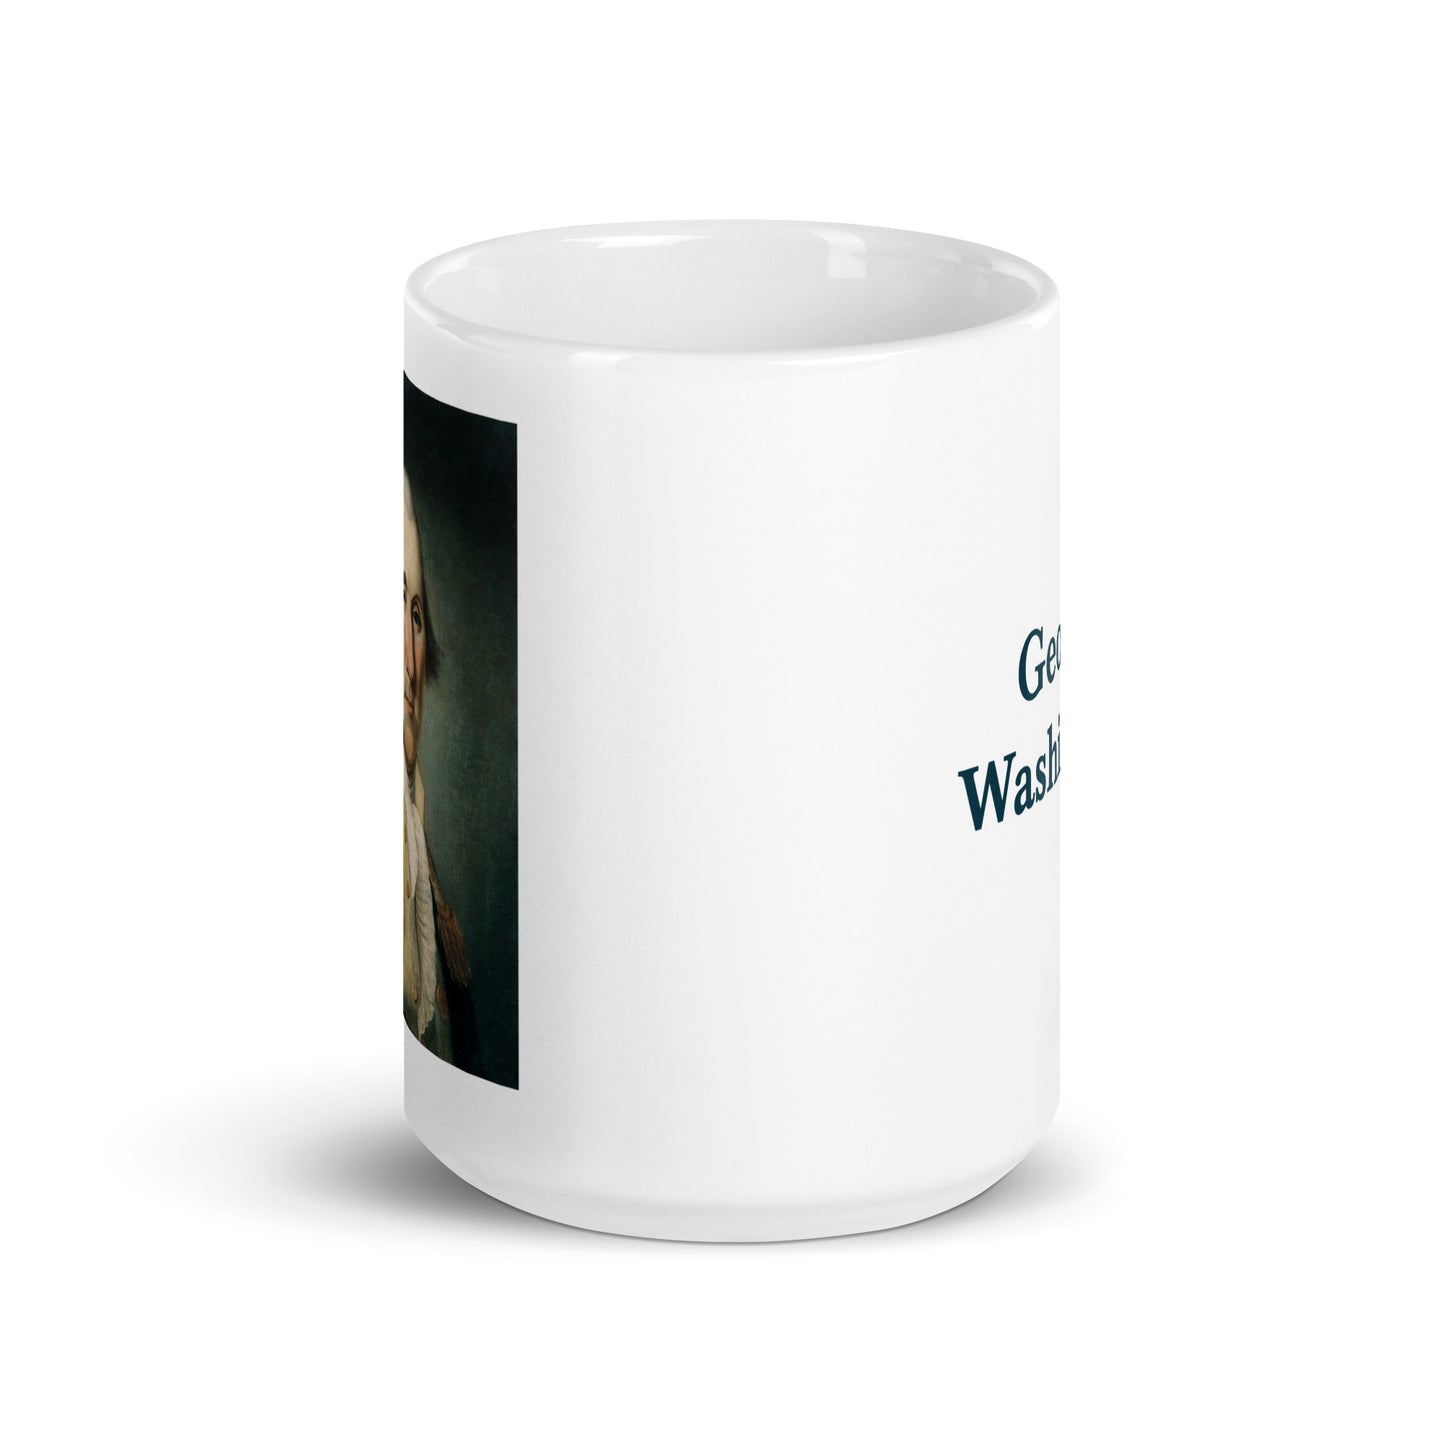 George Washiongton white glossy mug